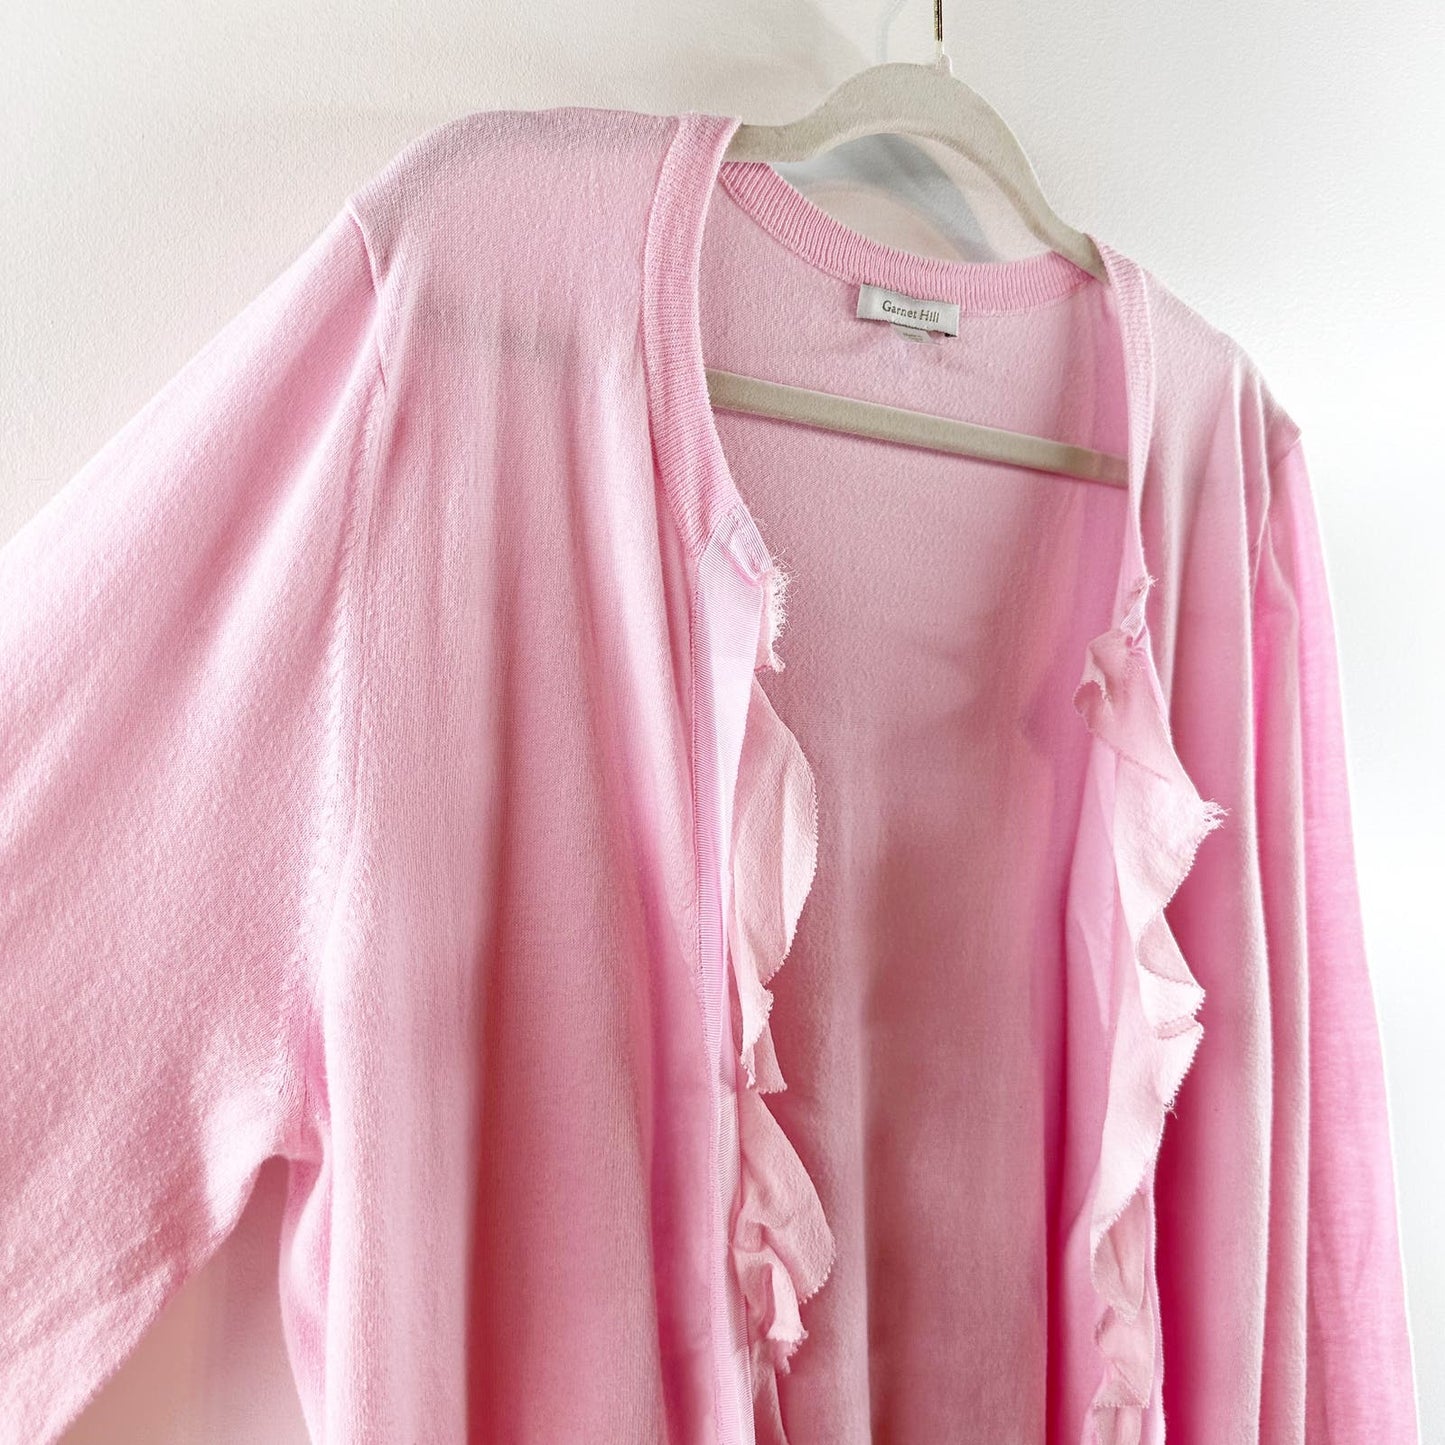 Garnett Hill Ruffle Long Sleeve Cardigan Sweater Pink Cotton XL